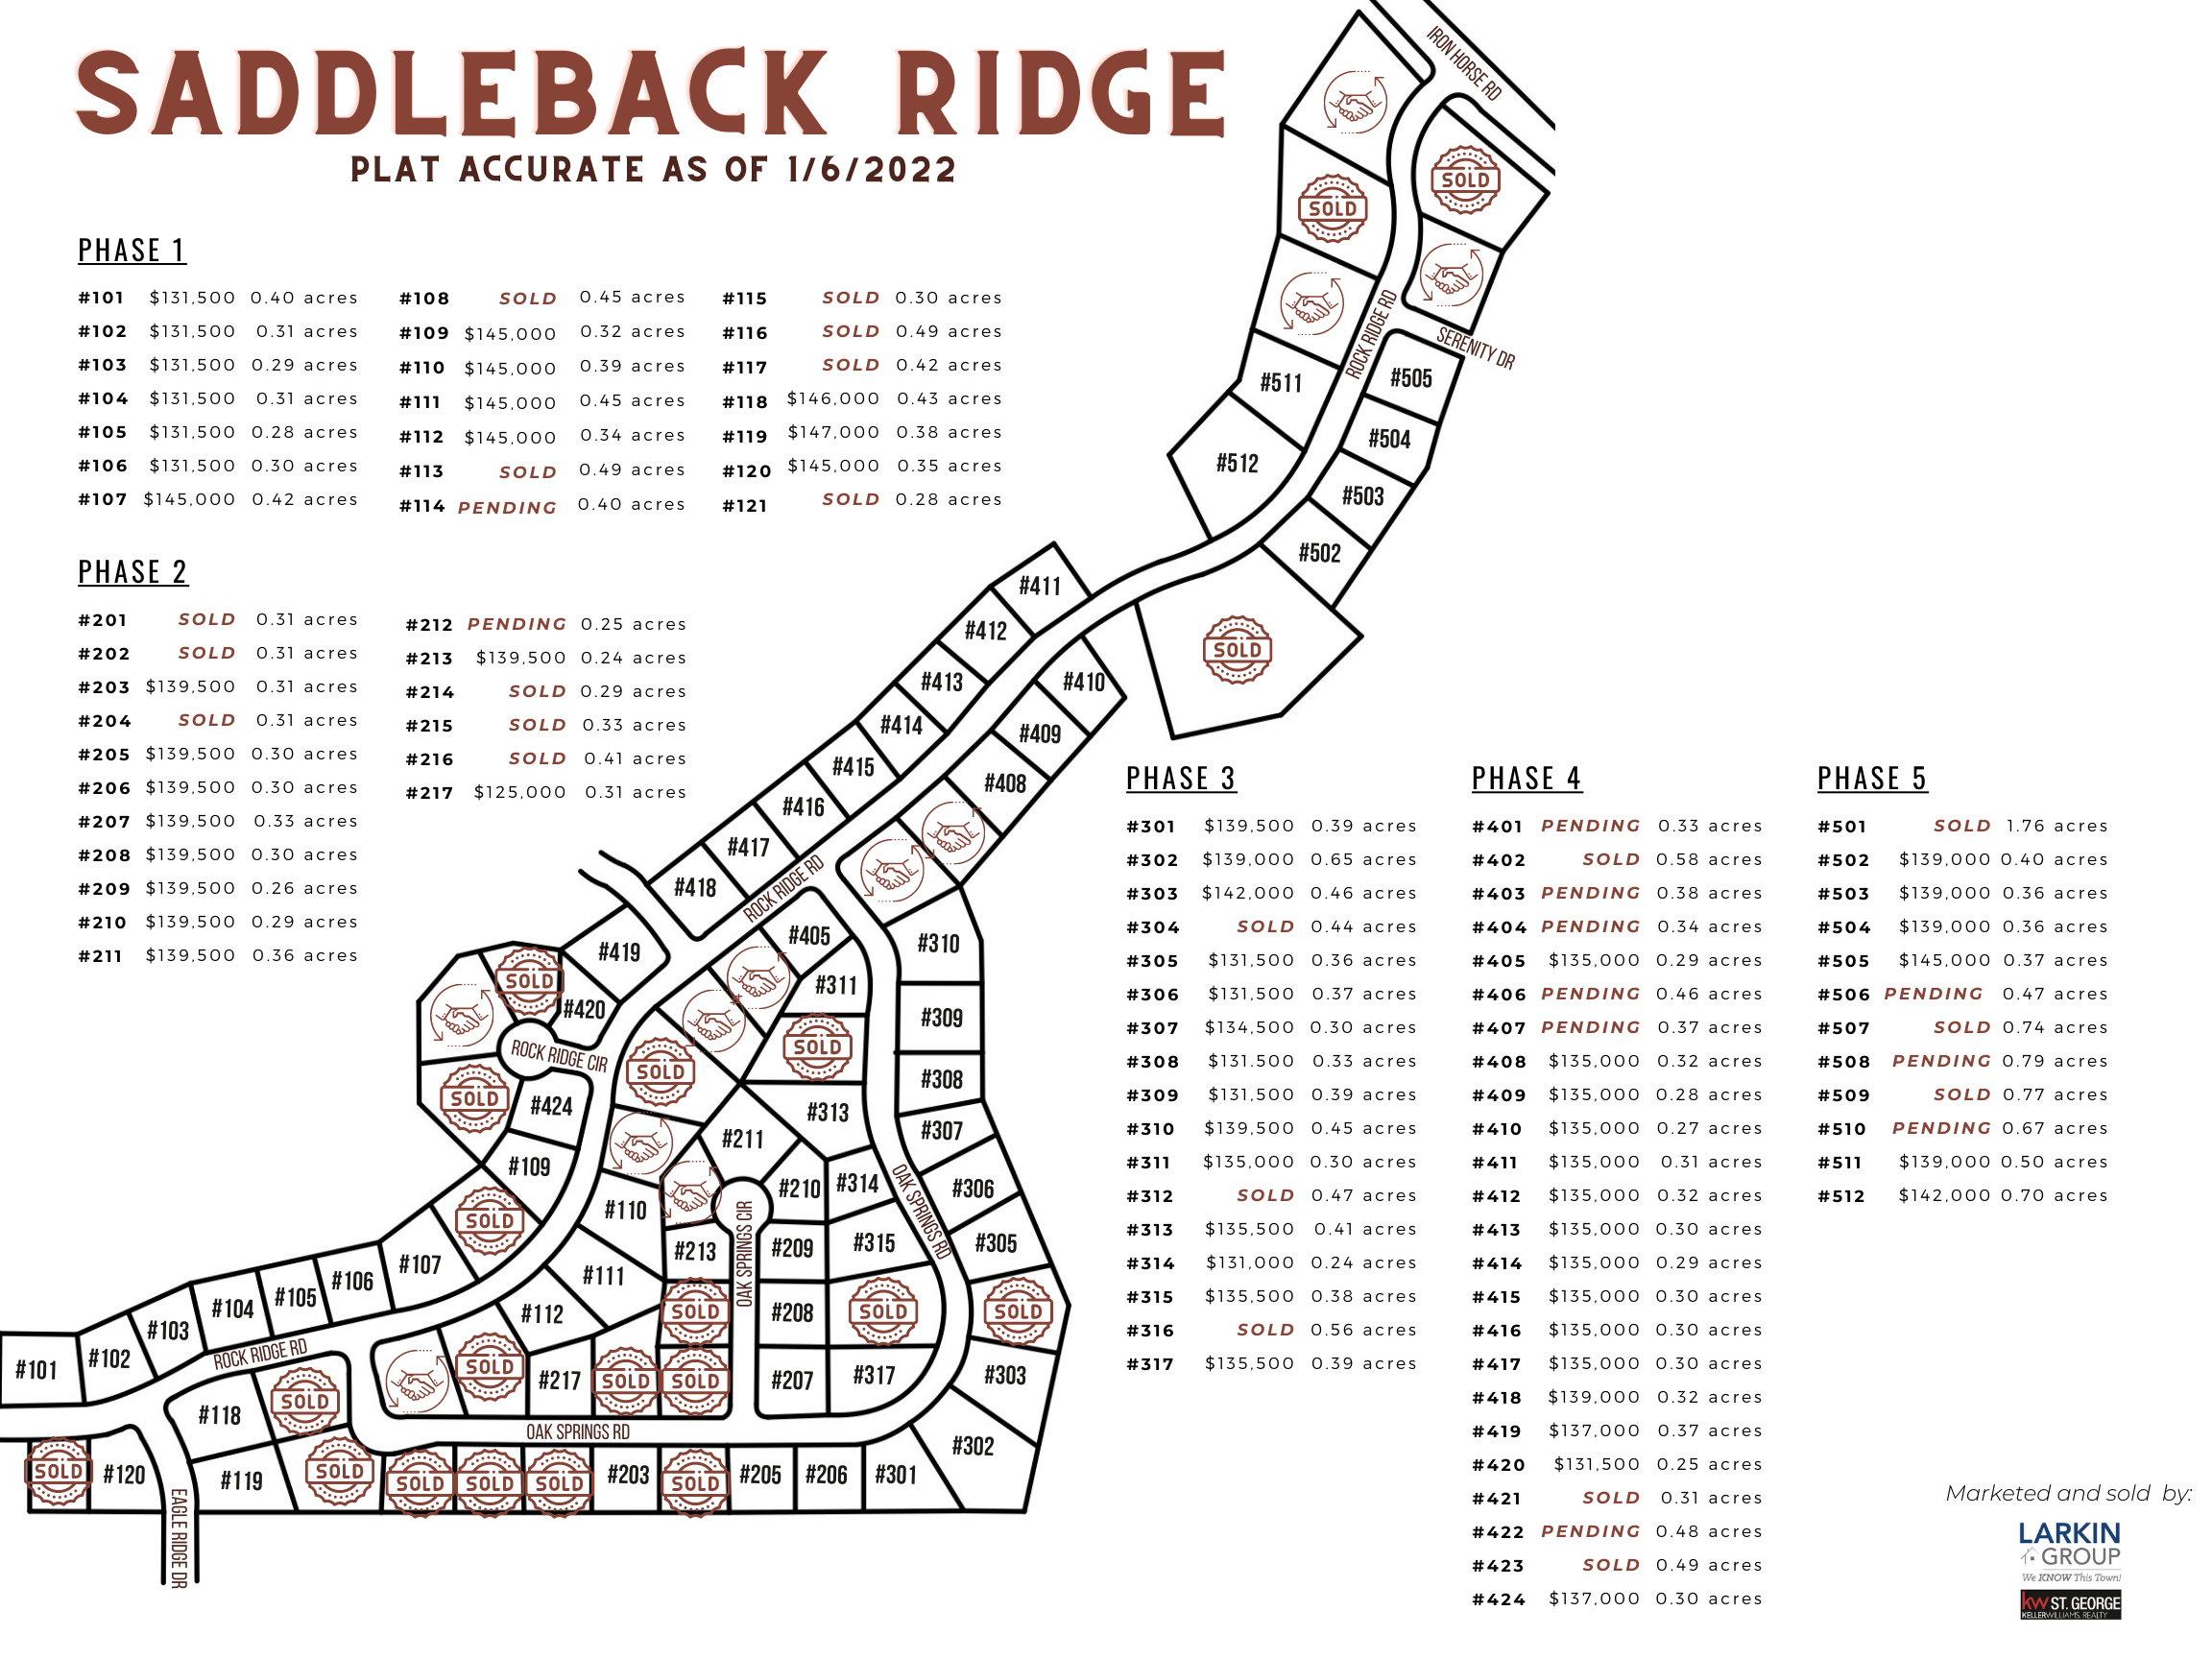 Saddleback Ridge Plat as of 1/6/22